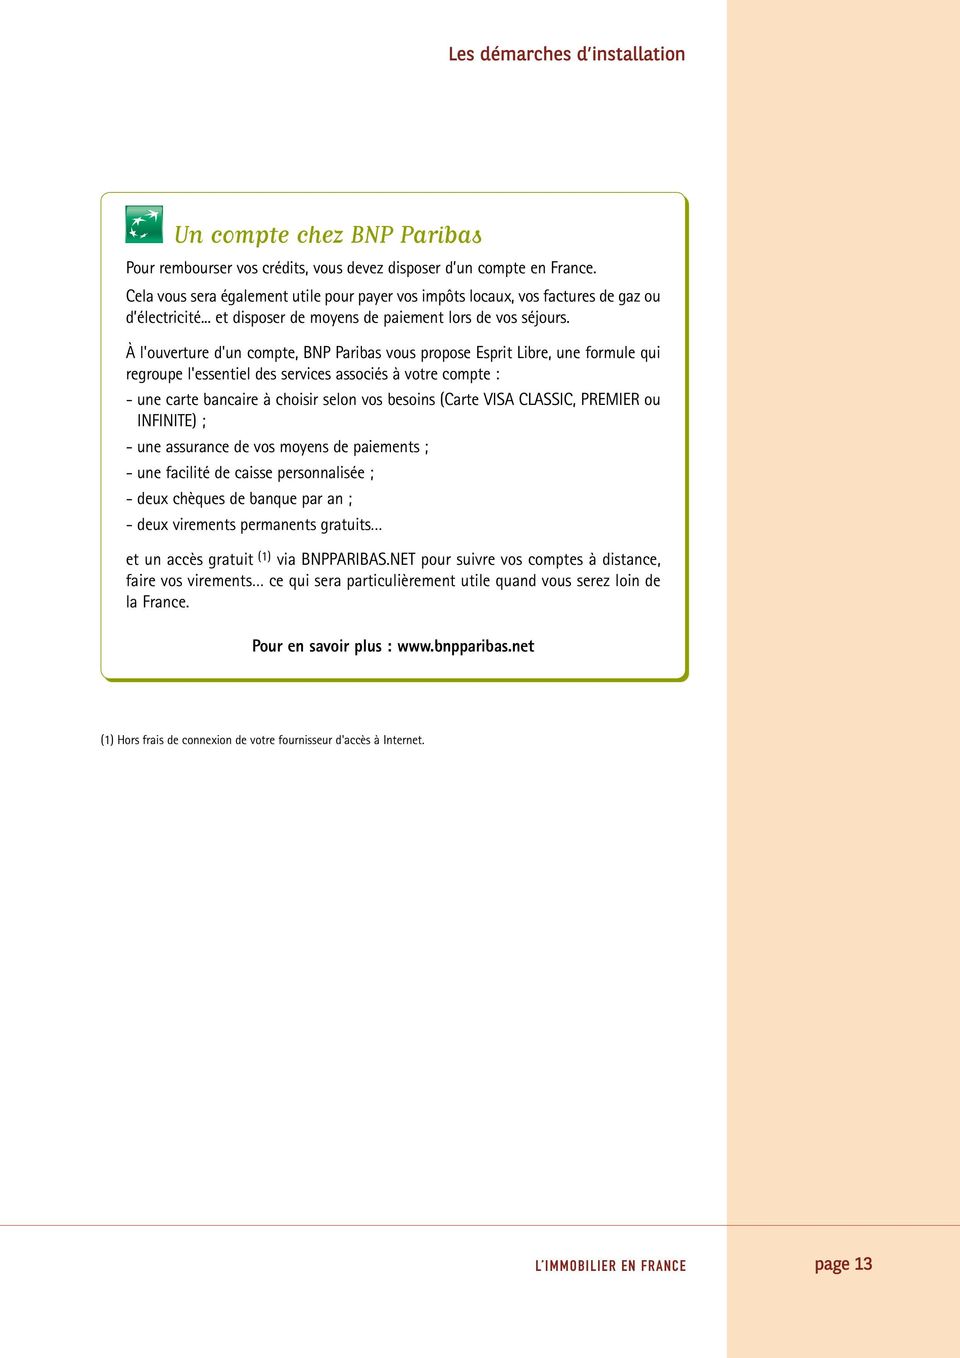 À l'ouverture d'un compte, BNP Paribas vous propose Esprit Libre, une formule qui regroupe l'essentiel des services associés à votre compte : - une carte bancaire à choisir selon vos besoins (Carte